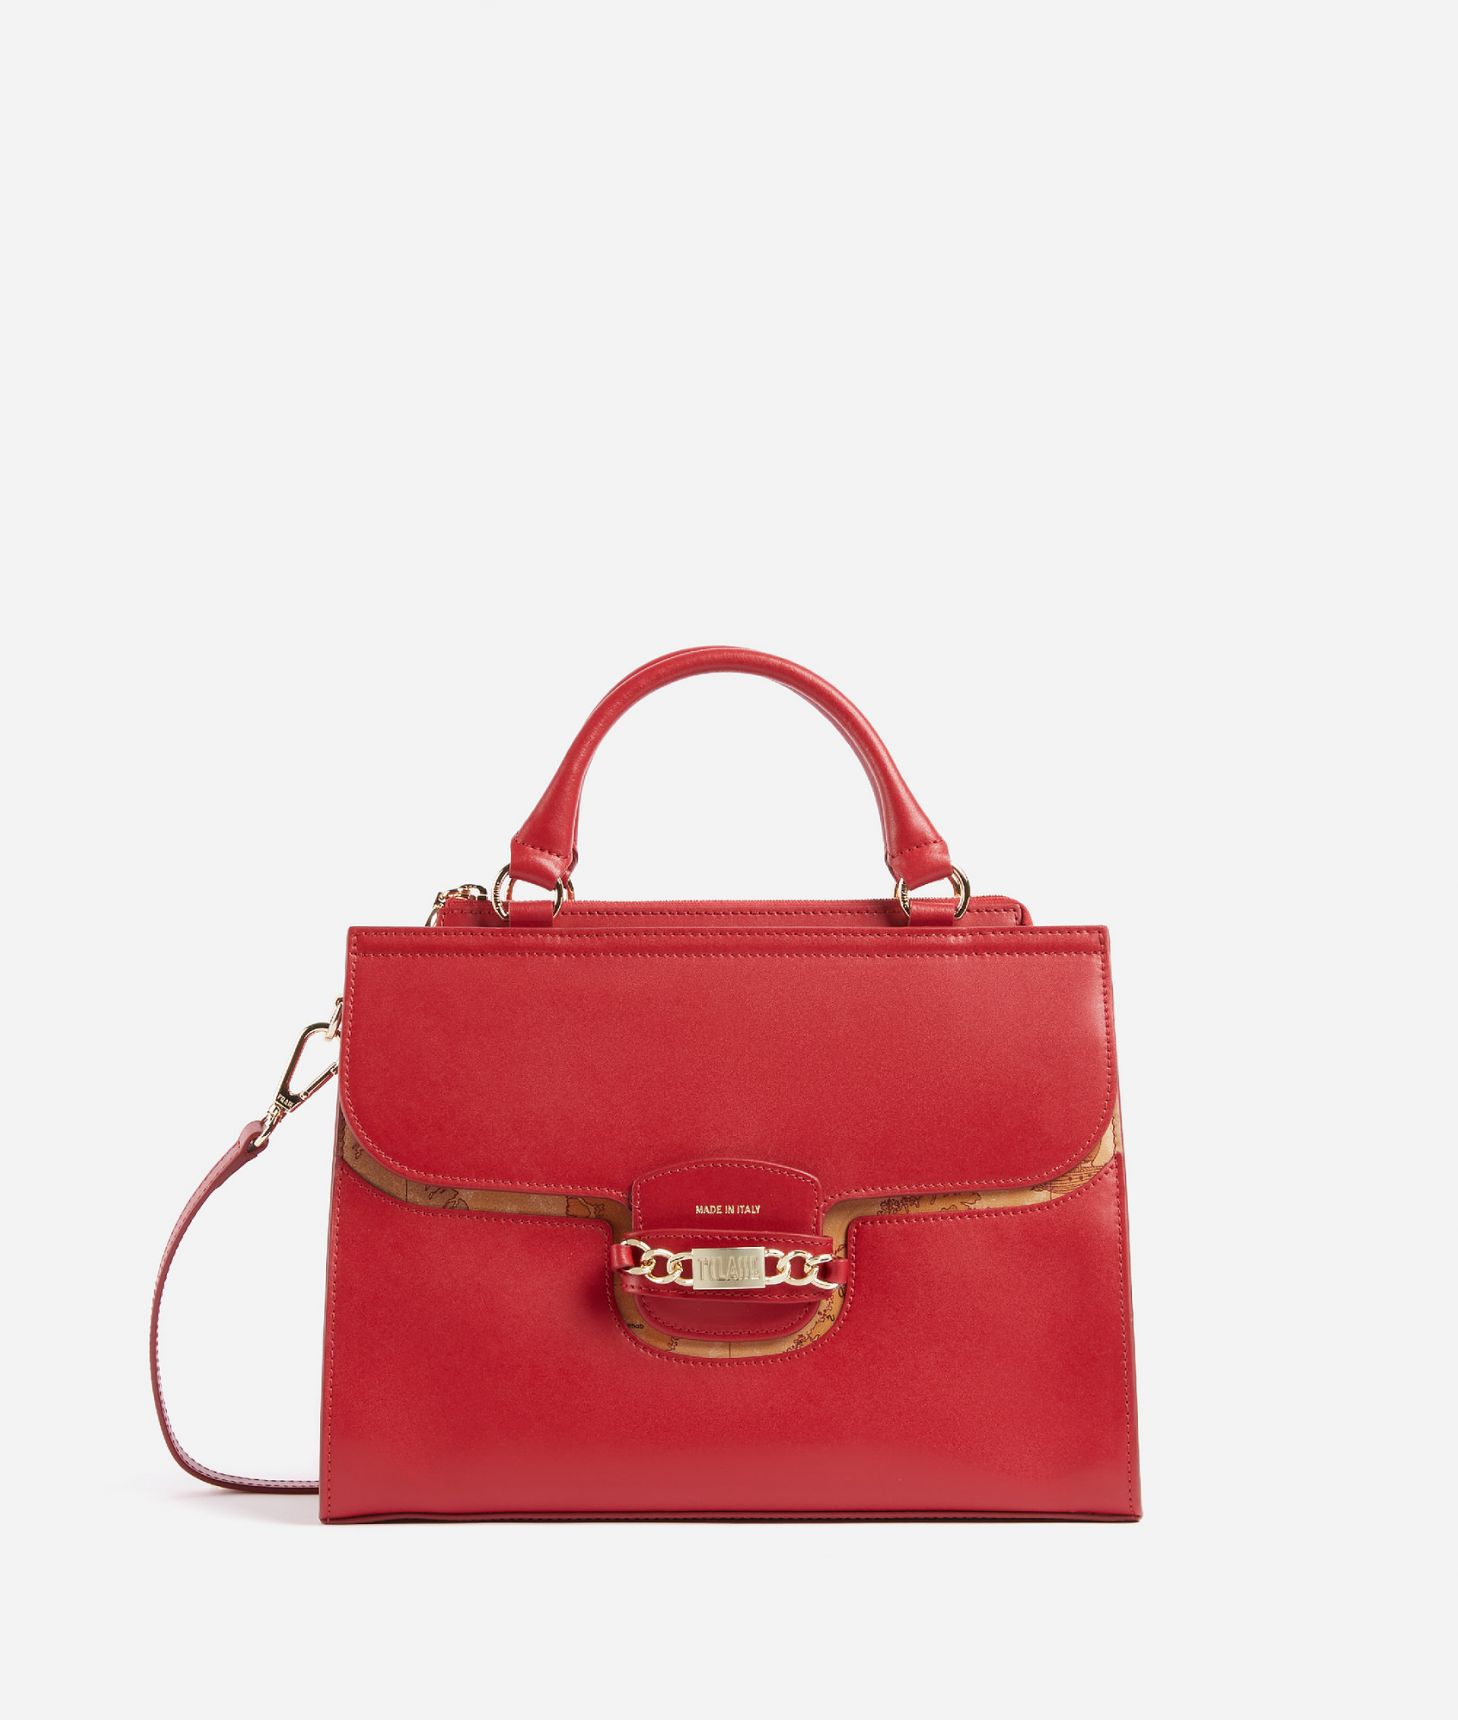 Millennium Bag smooth leather handbag with shoulder strap Scarlet Red,front